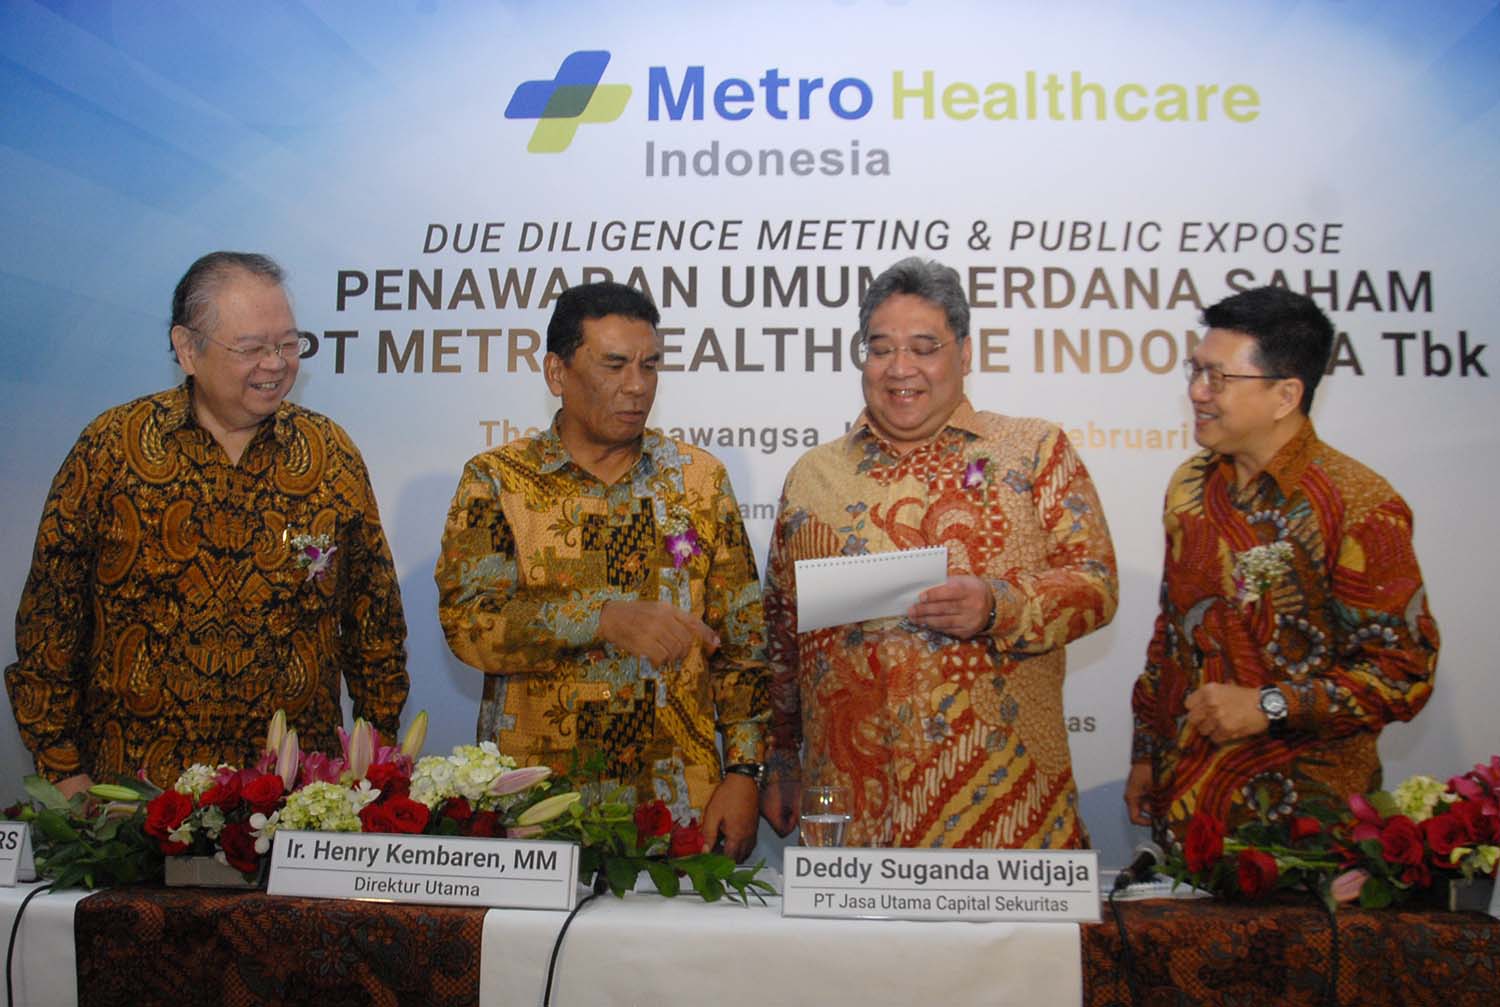 Lepas Lagi! CLS Divestasi 78,59 Juta Saham Metro Healthcare Indonesia (CARE)